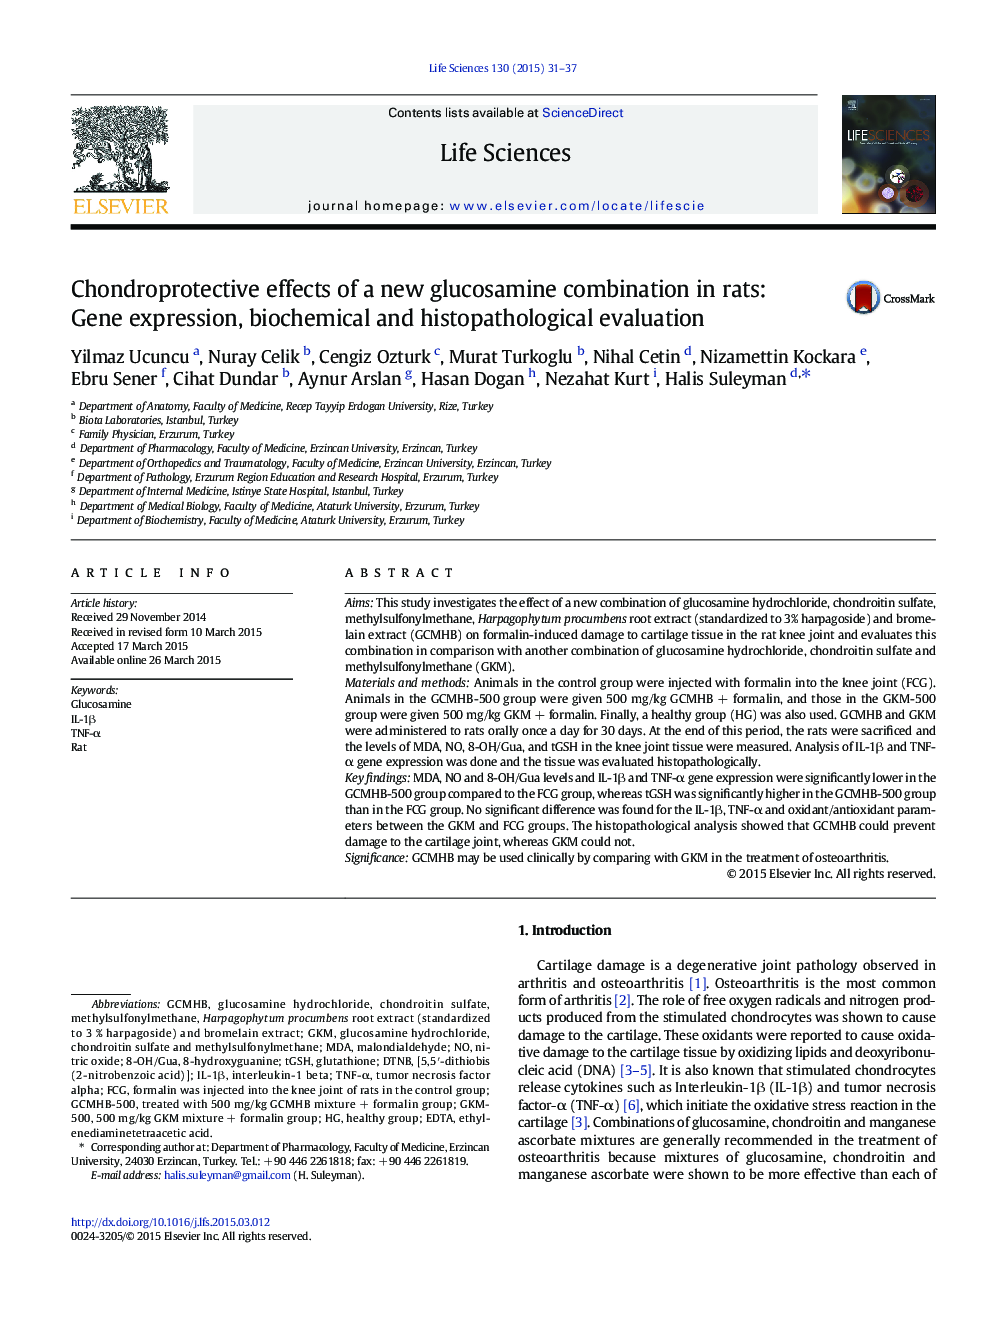 اثرات کلسترول محافظتی یک ترکیب گلوکزامین جدید در موش صحرایی: بیان ژن، ارزیابی بیوشیمیایی و هیستوپاتولوژیک 